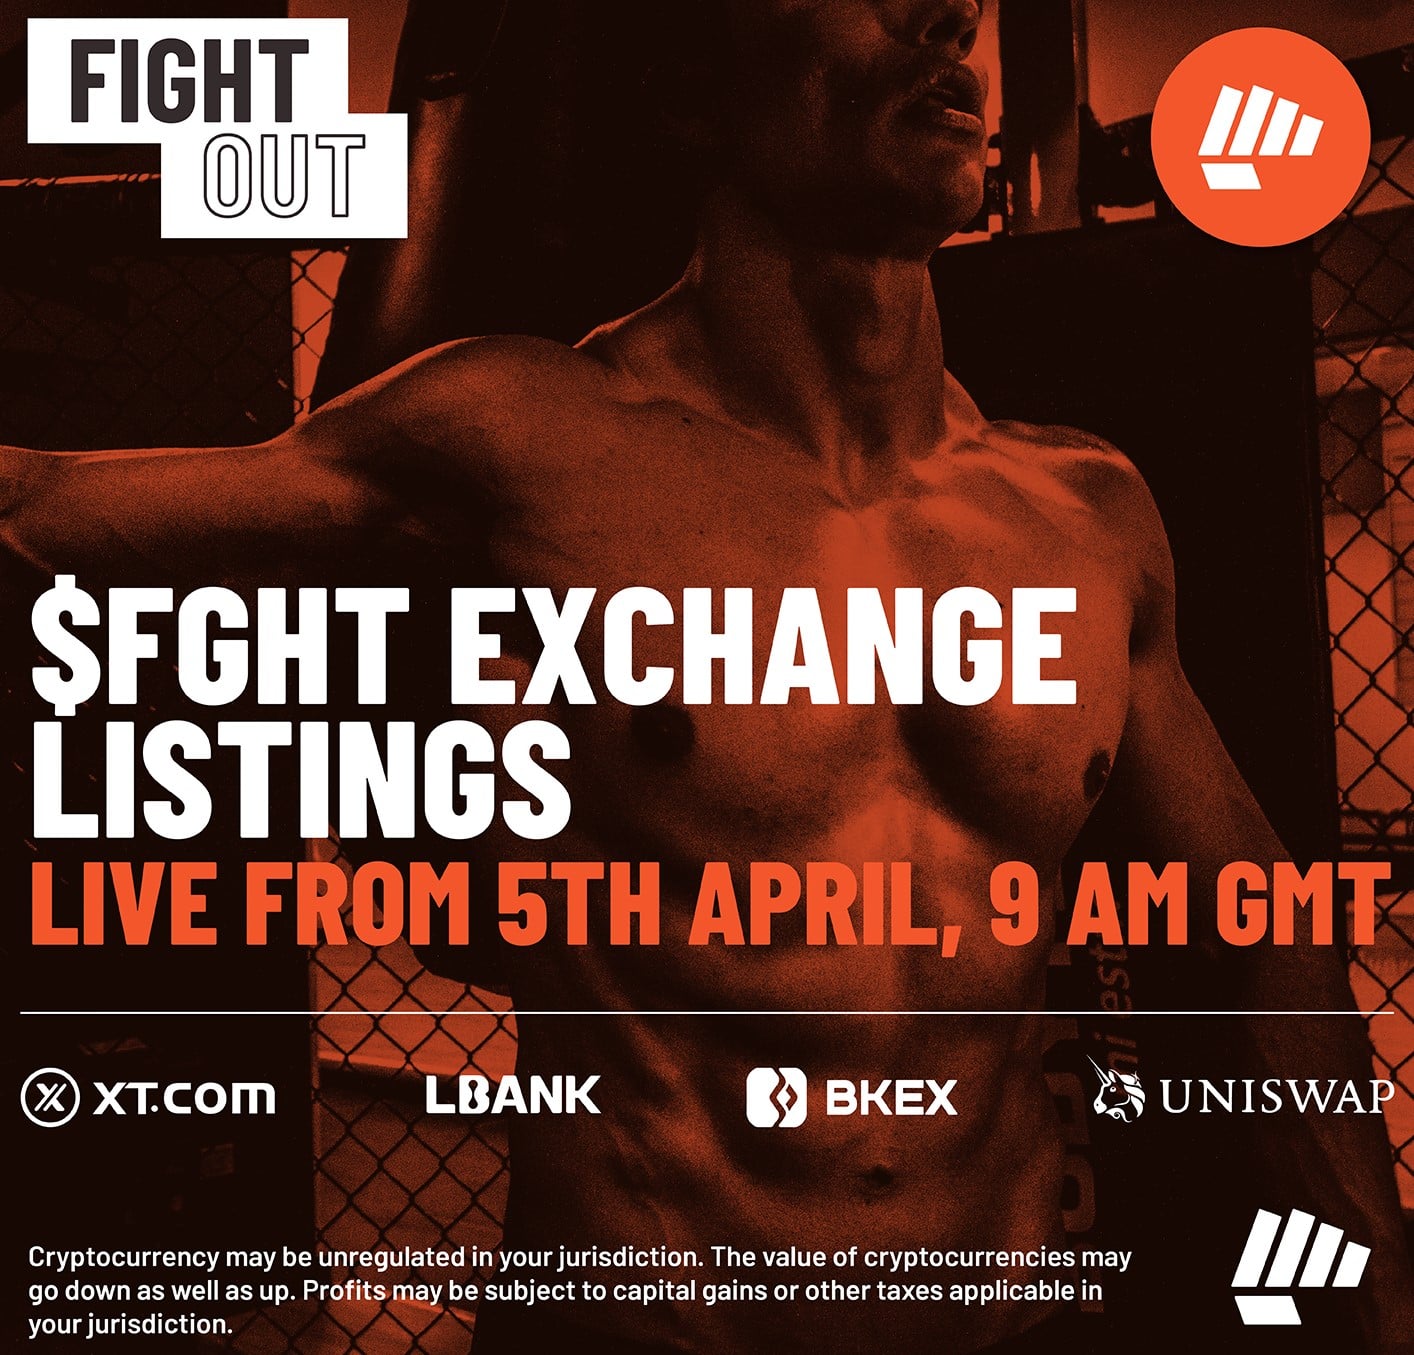 Fight Out debutta oggi sugli exchange dopo aver raccolto 6,2 milioni di dollari in prevendita!